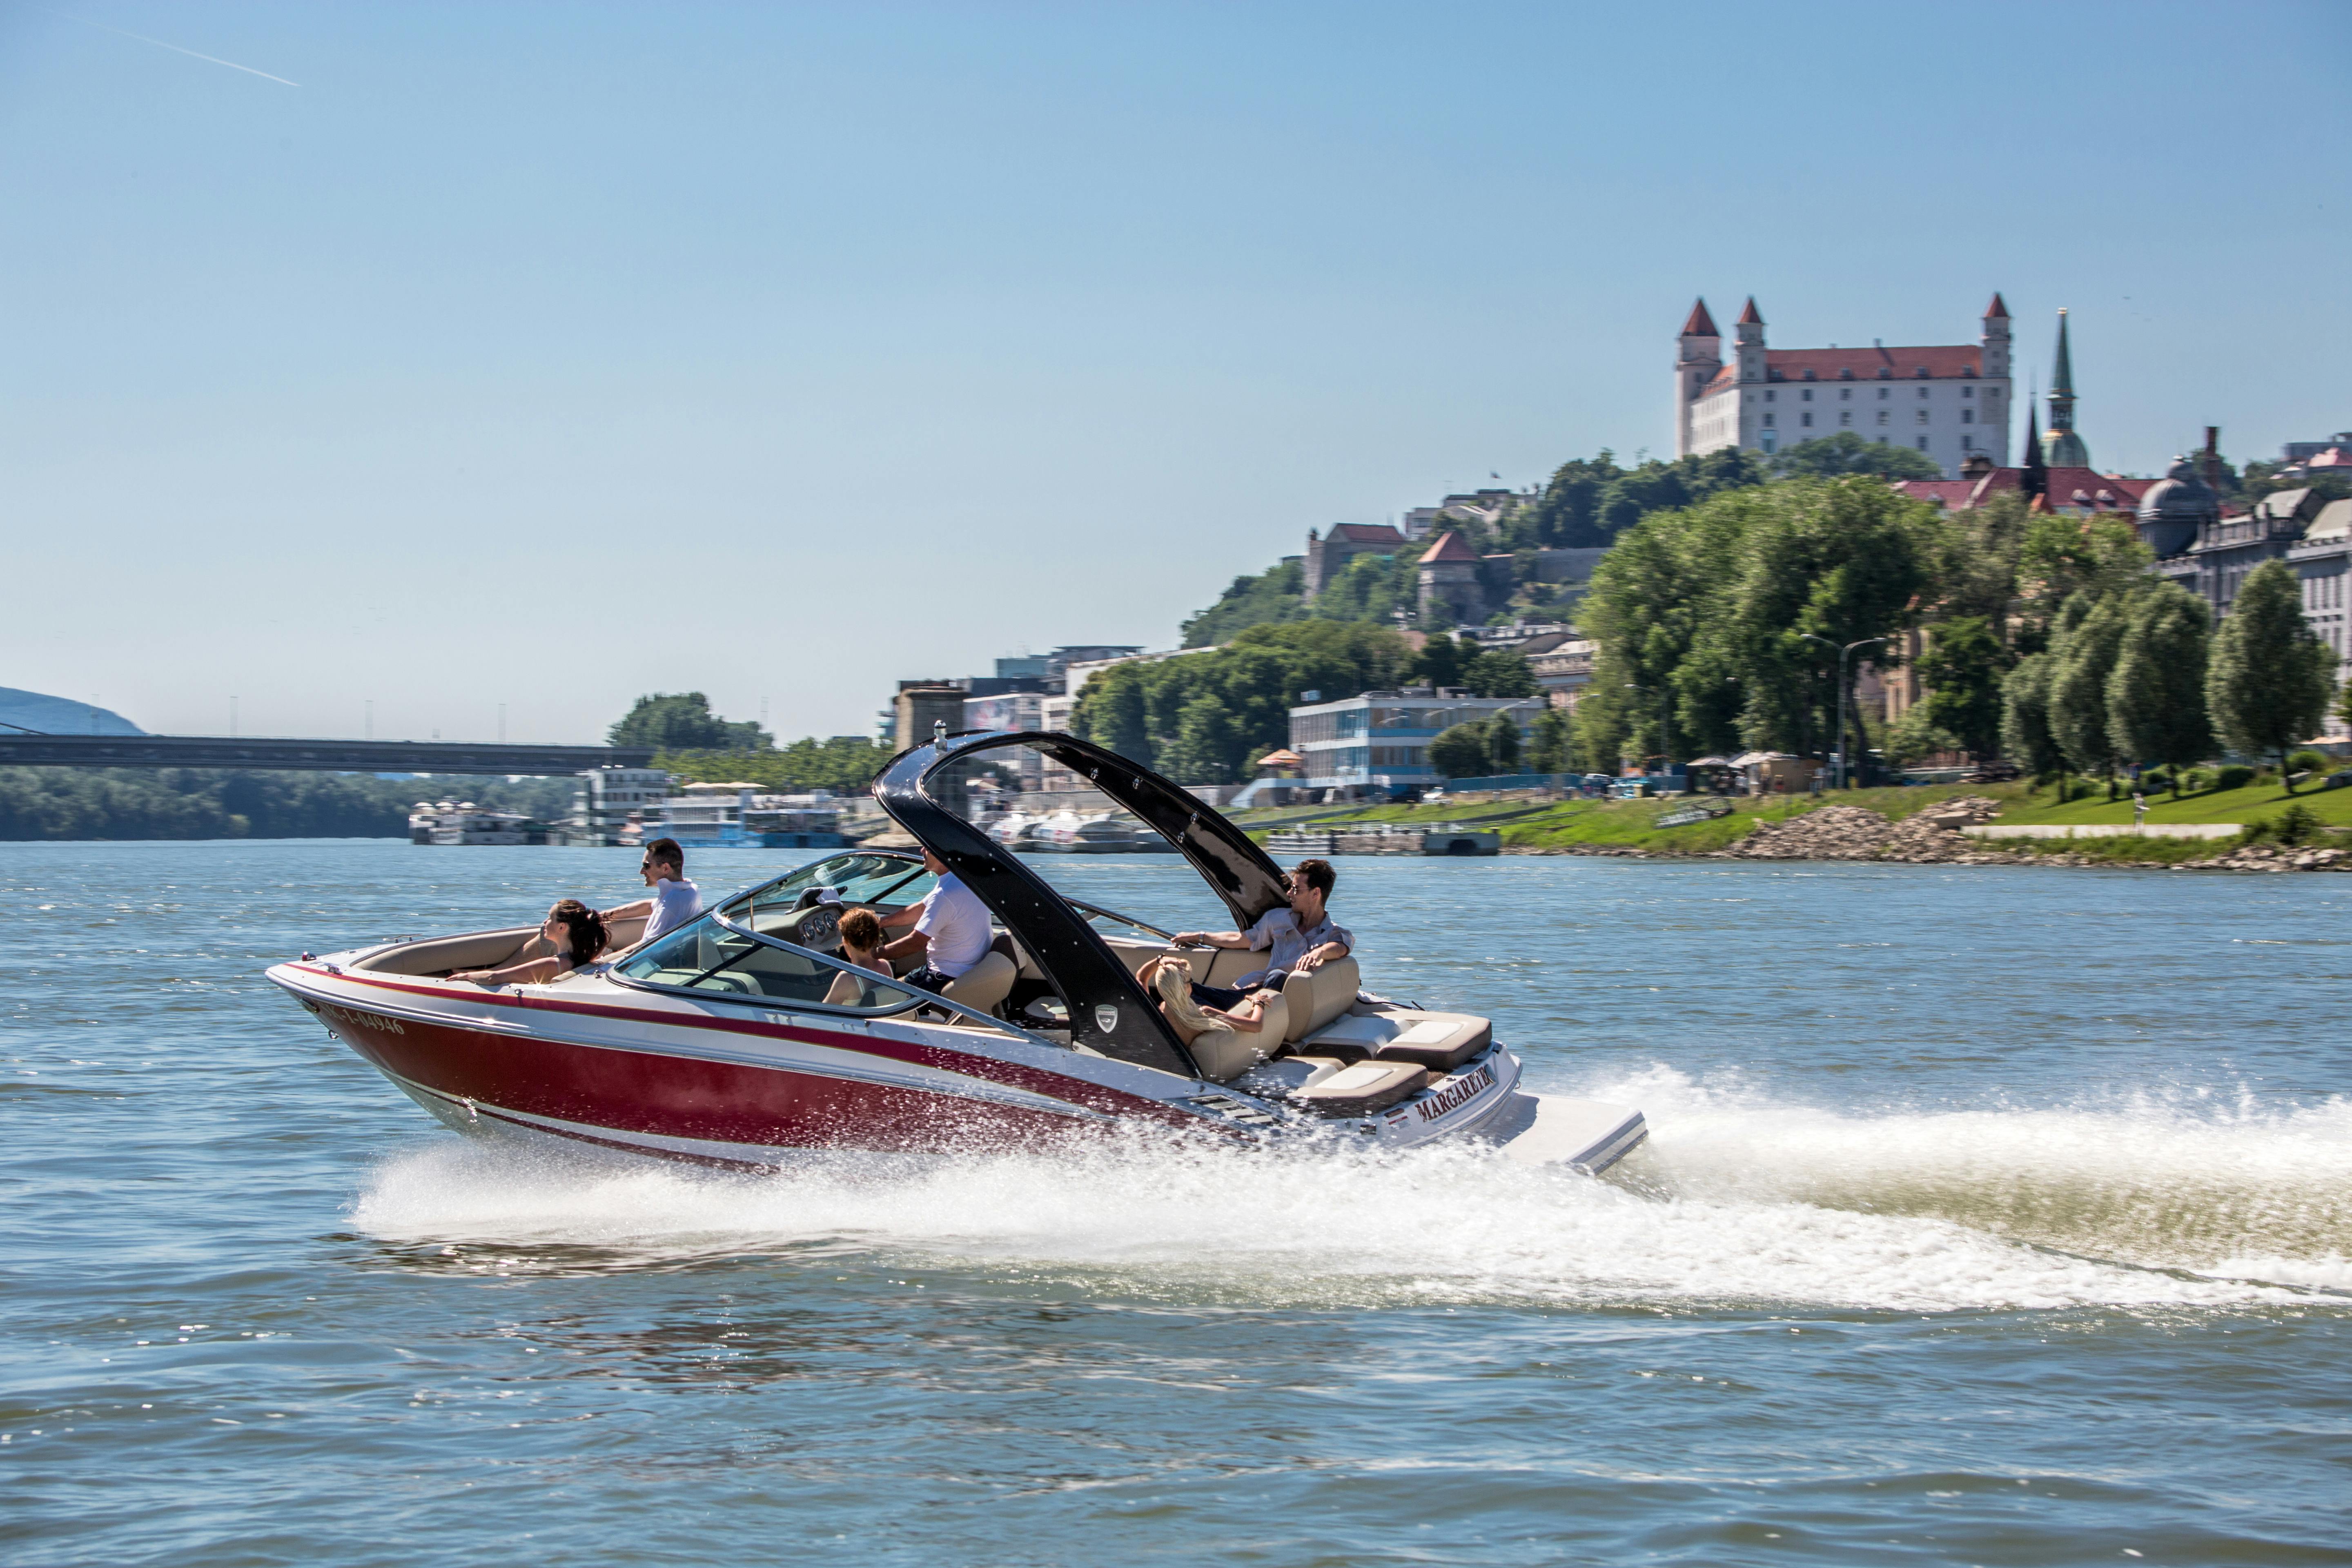 Speedboat tour on the Danube in Bratislava